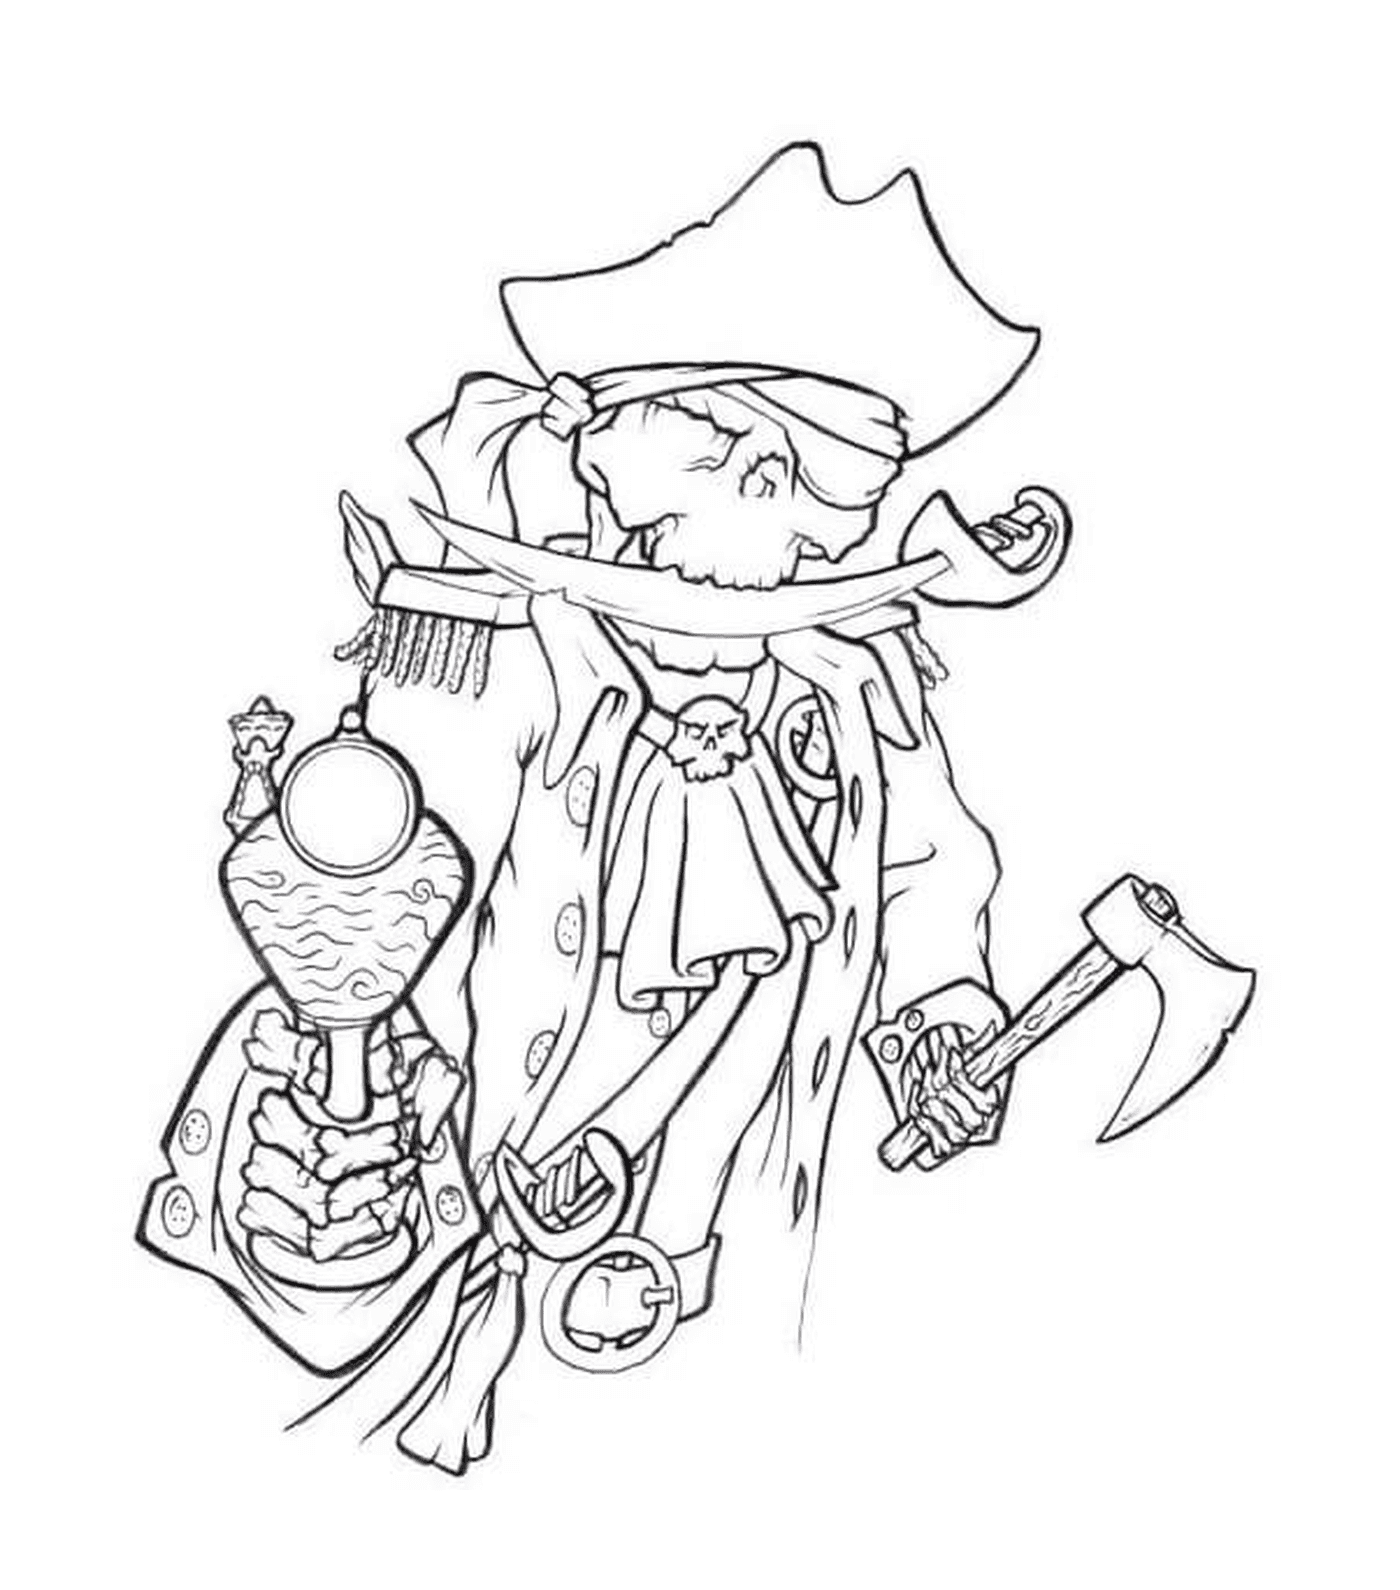  Piraten-Skeleton 